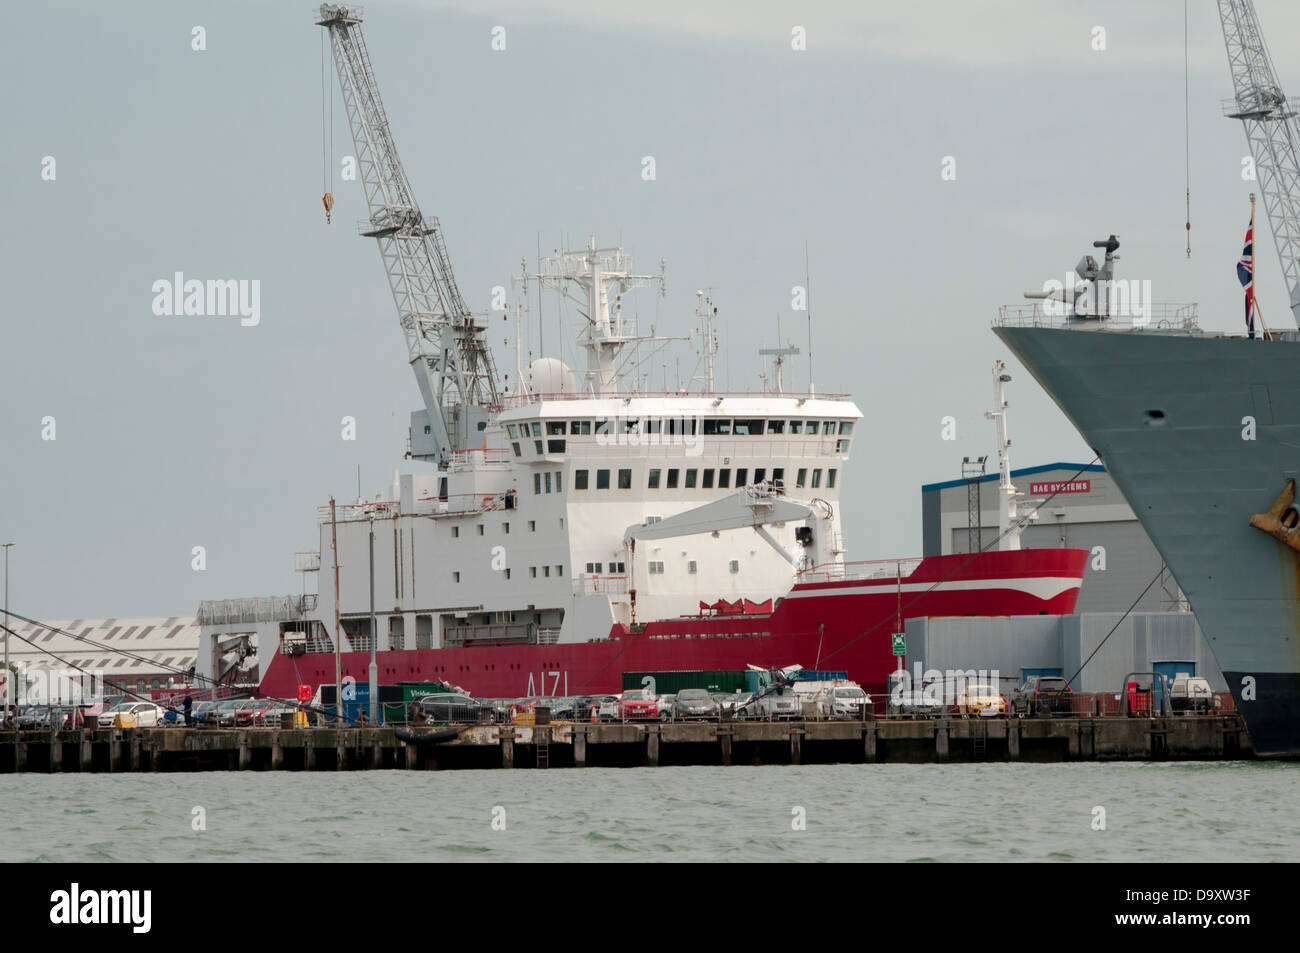 HMS Endurance vertäut im Hafen von Portsmouth mit einem aufschrauben Stockfoto